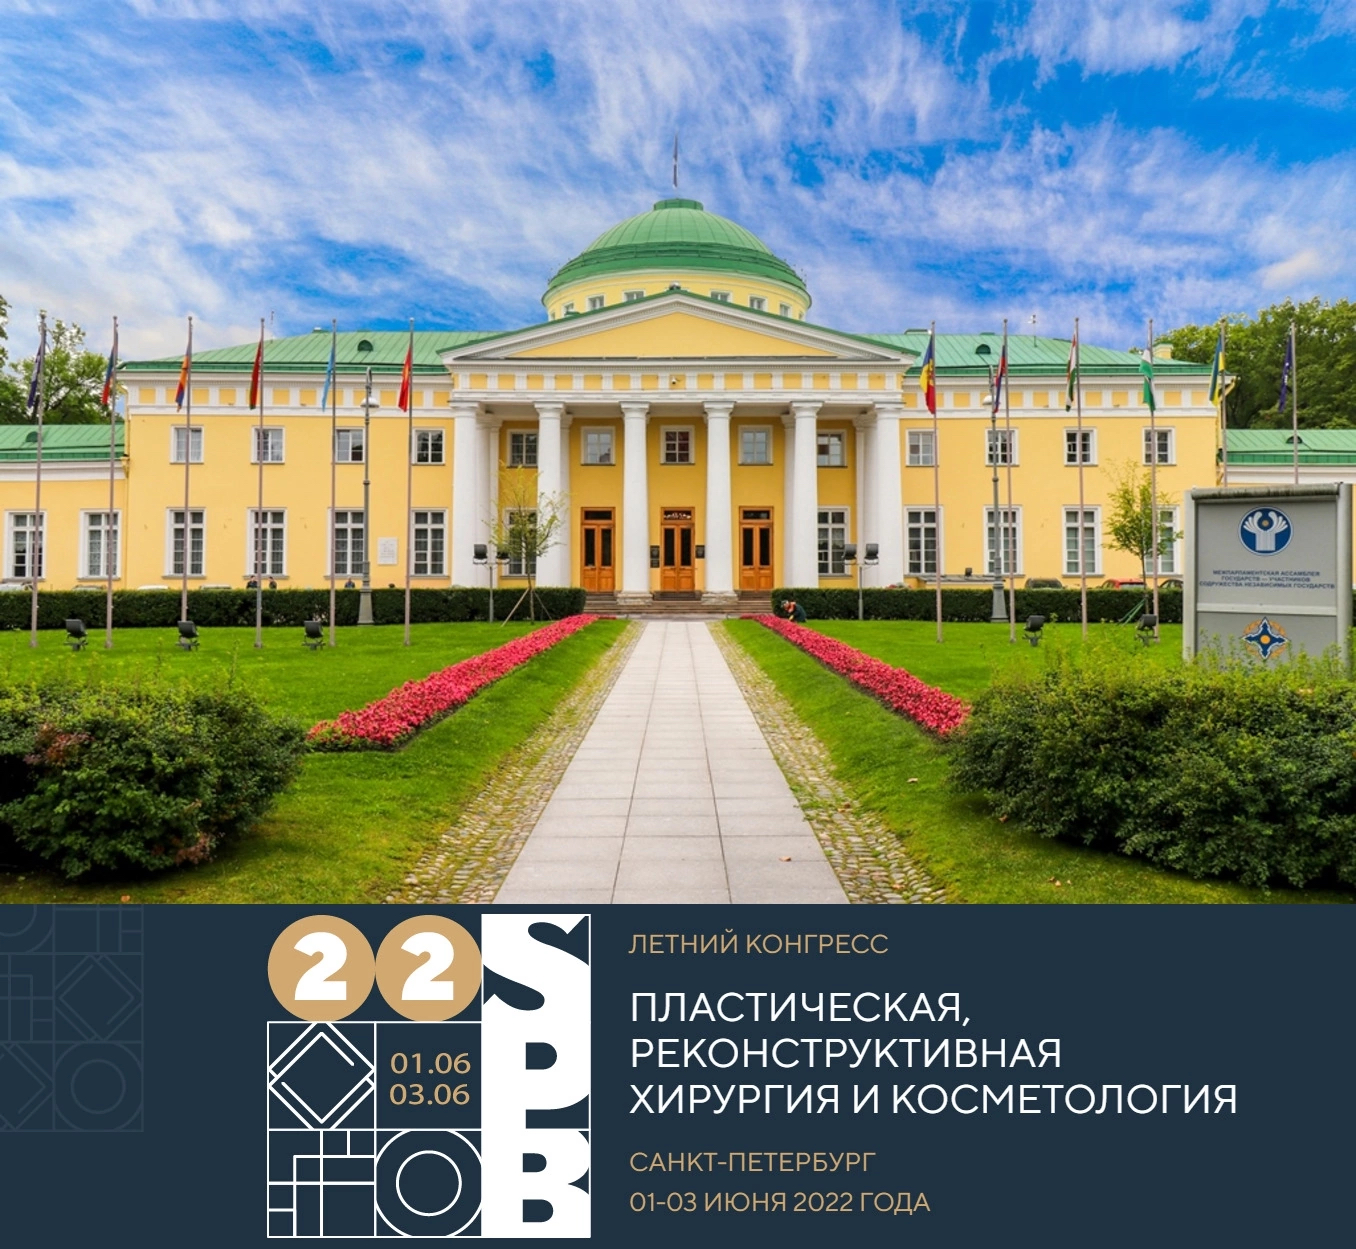 Летний конгресс – 2022 с 1 по 3 июня в Санкт-Петербурге